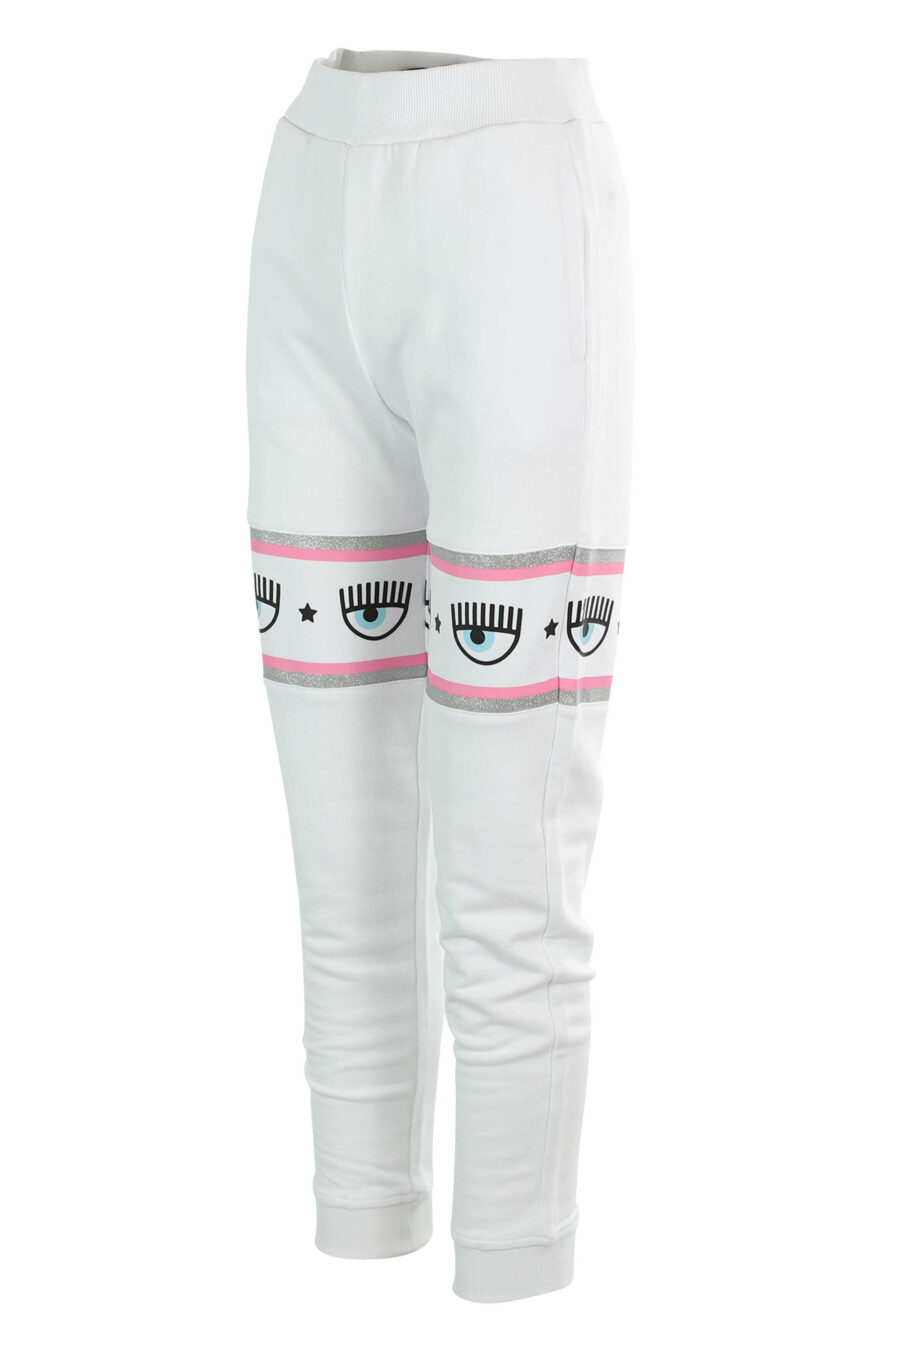 Pantalón de chándal blanco y logo en cinta rosa y plateado - 8052672419064 2